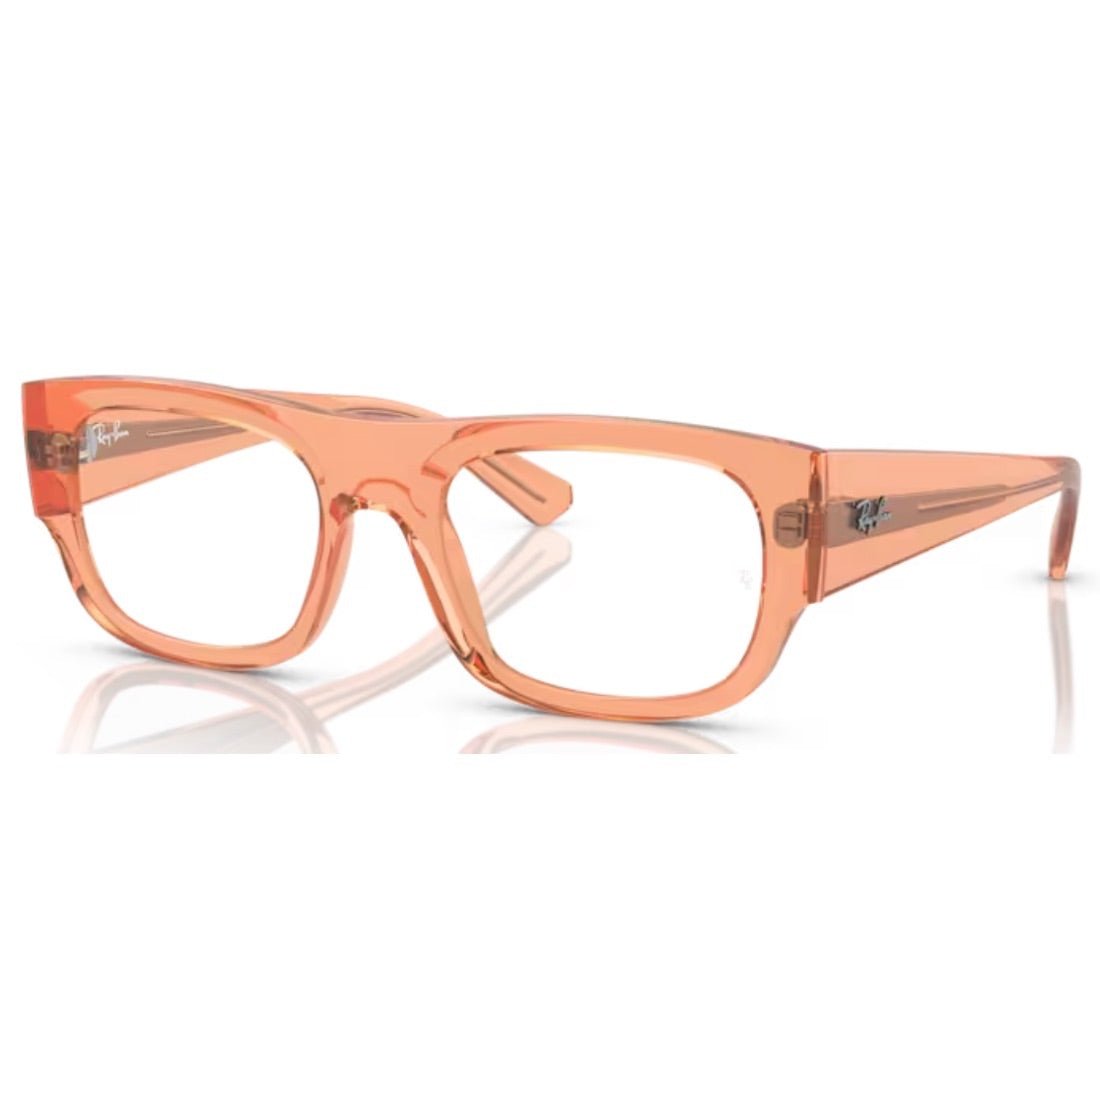 Get Ray-Ban Eyeglasses & Frames Available at Paris Optical